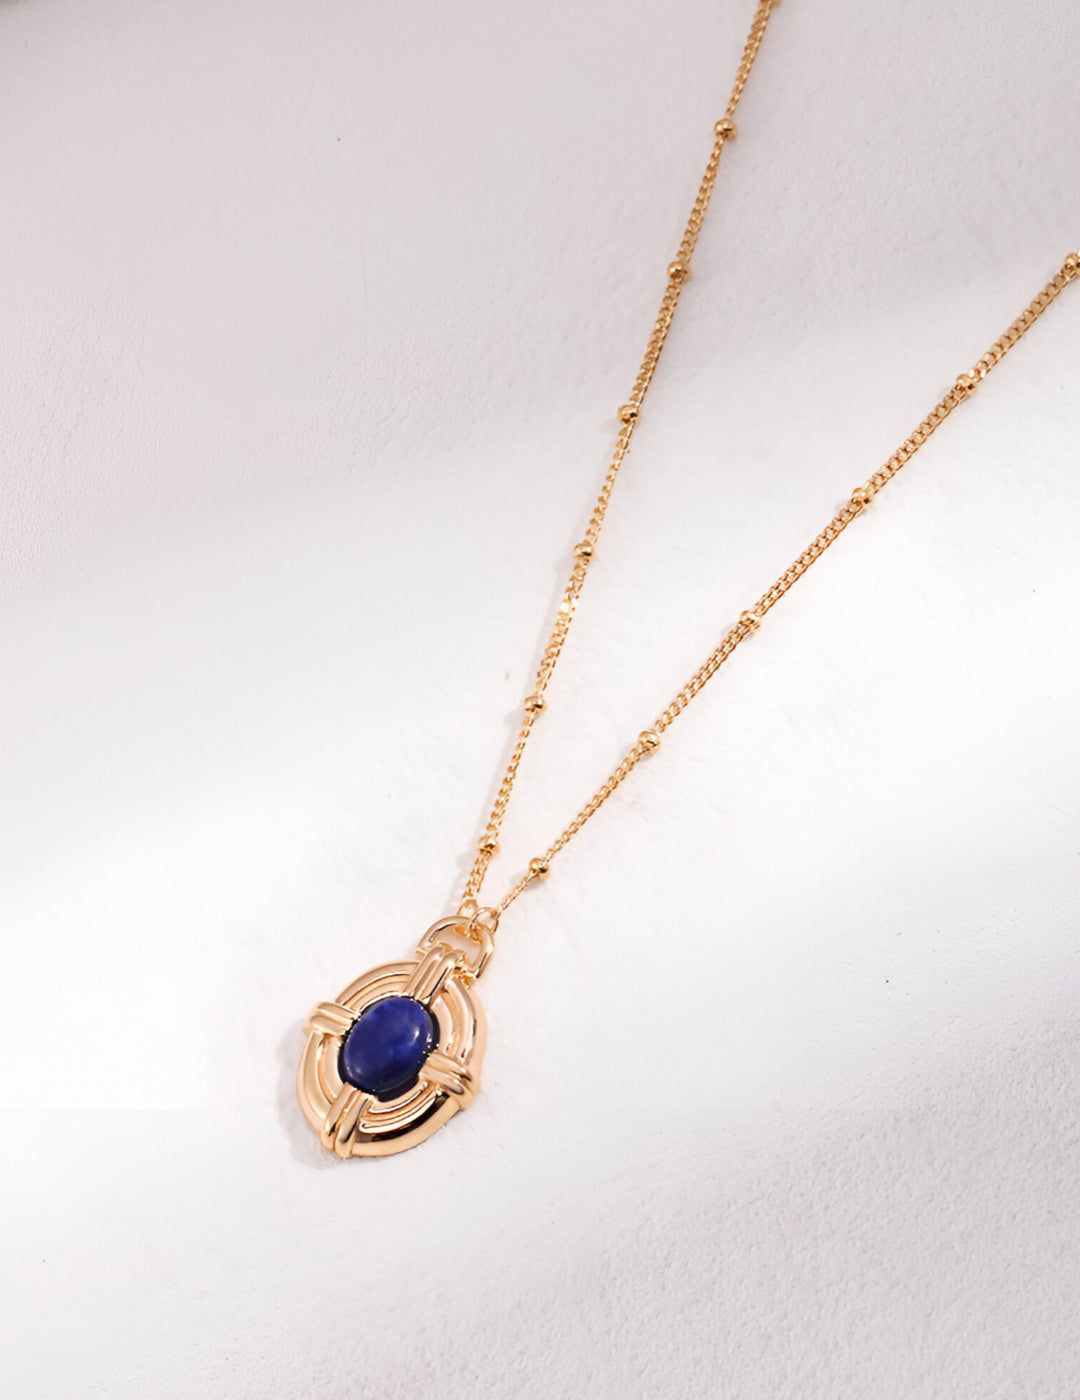 Lustrous Blue Lapis Lazuli Necklace - S925 Sterling Silver with 18K Gold Vermeil - Natural Blue Lapis Lazuli 